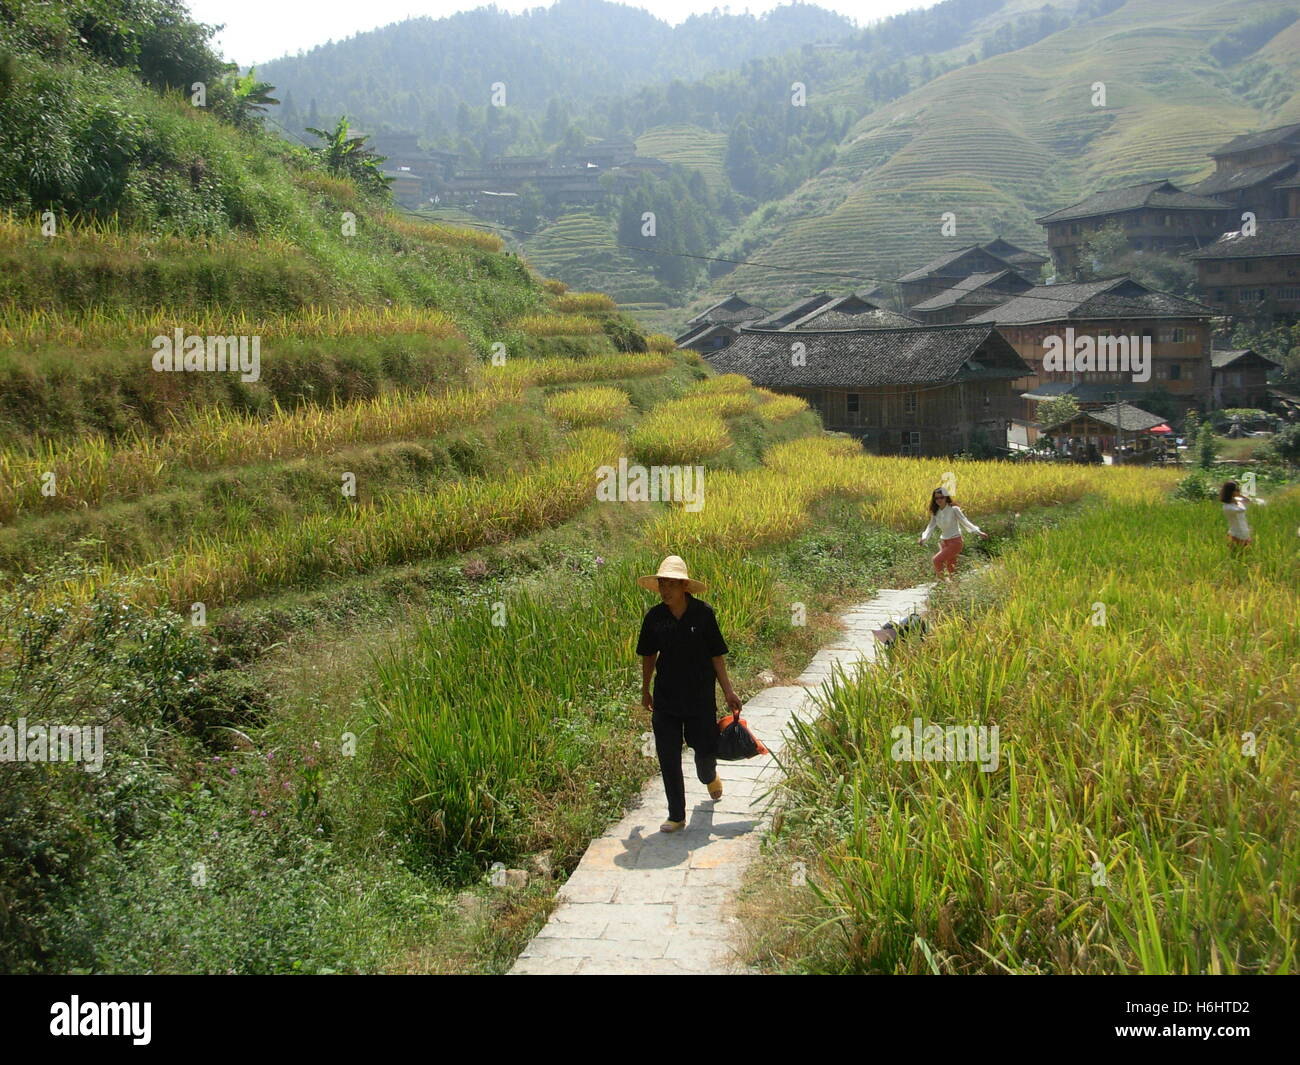 Maisons en bois et des terrasses de riz à l'intérieur de dazhai village traditionnel, Guilin, Guangxi Province, China Banque D'Images